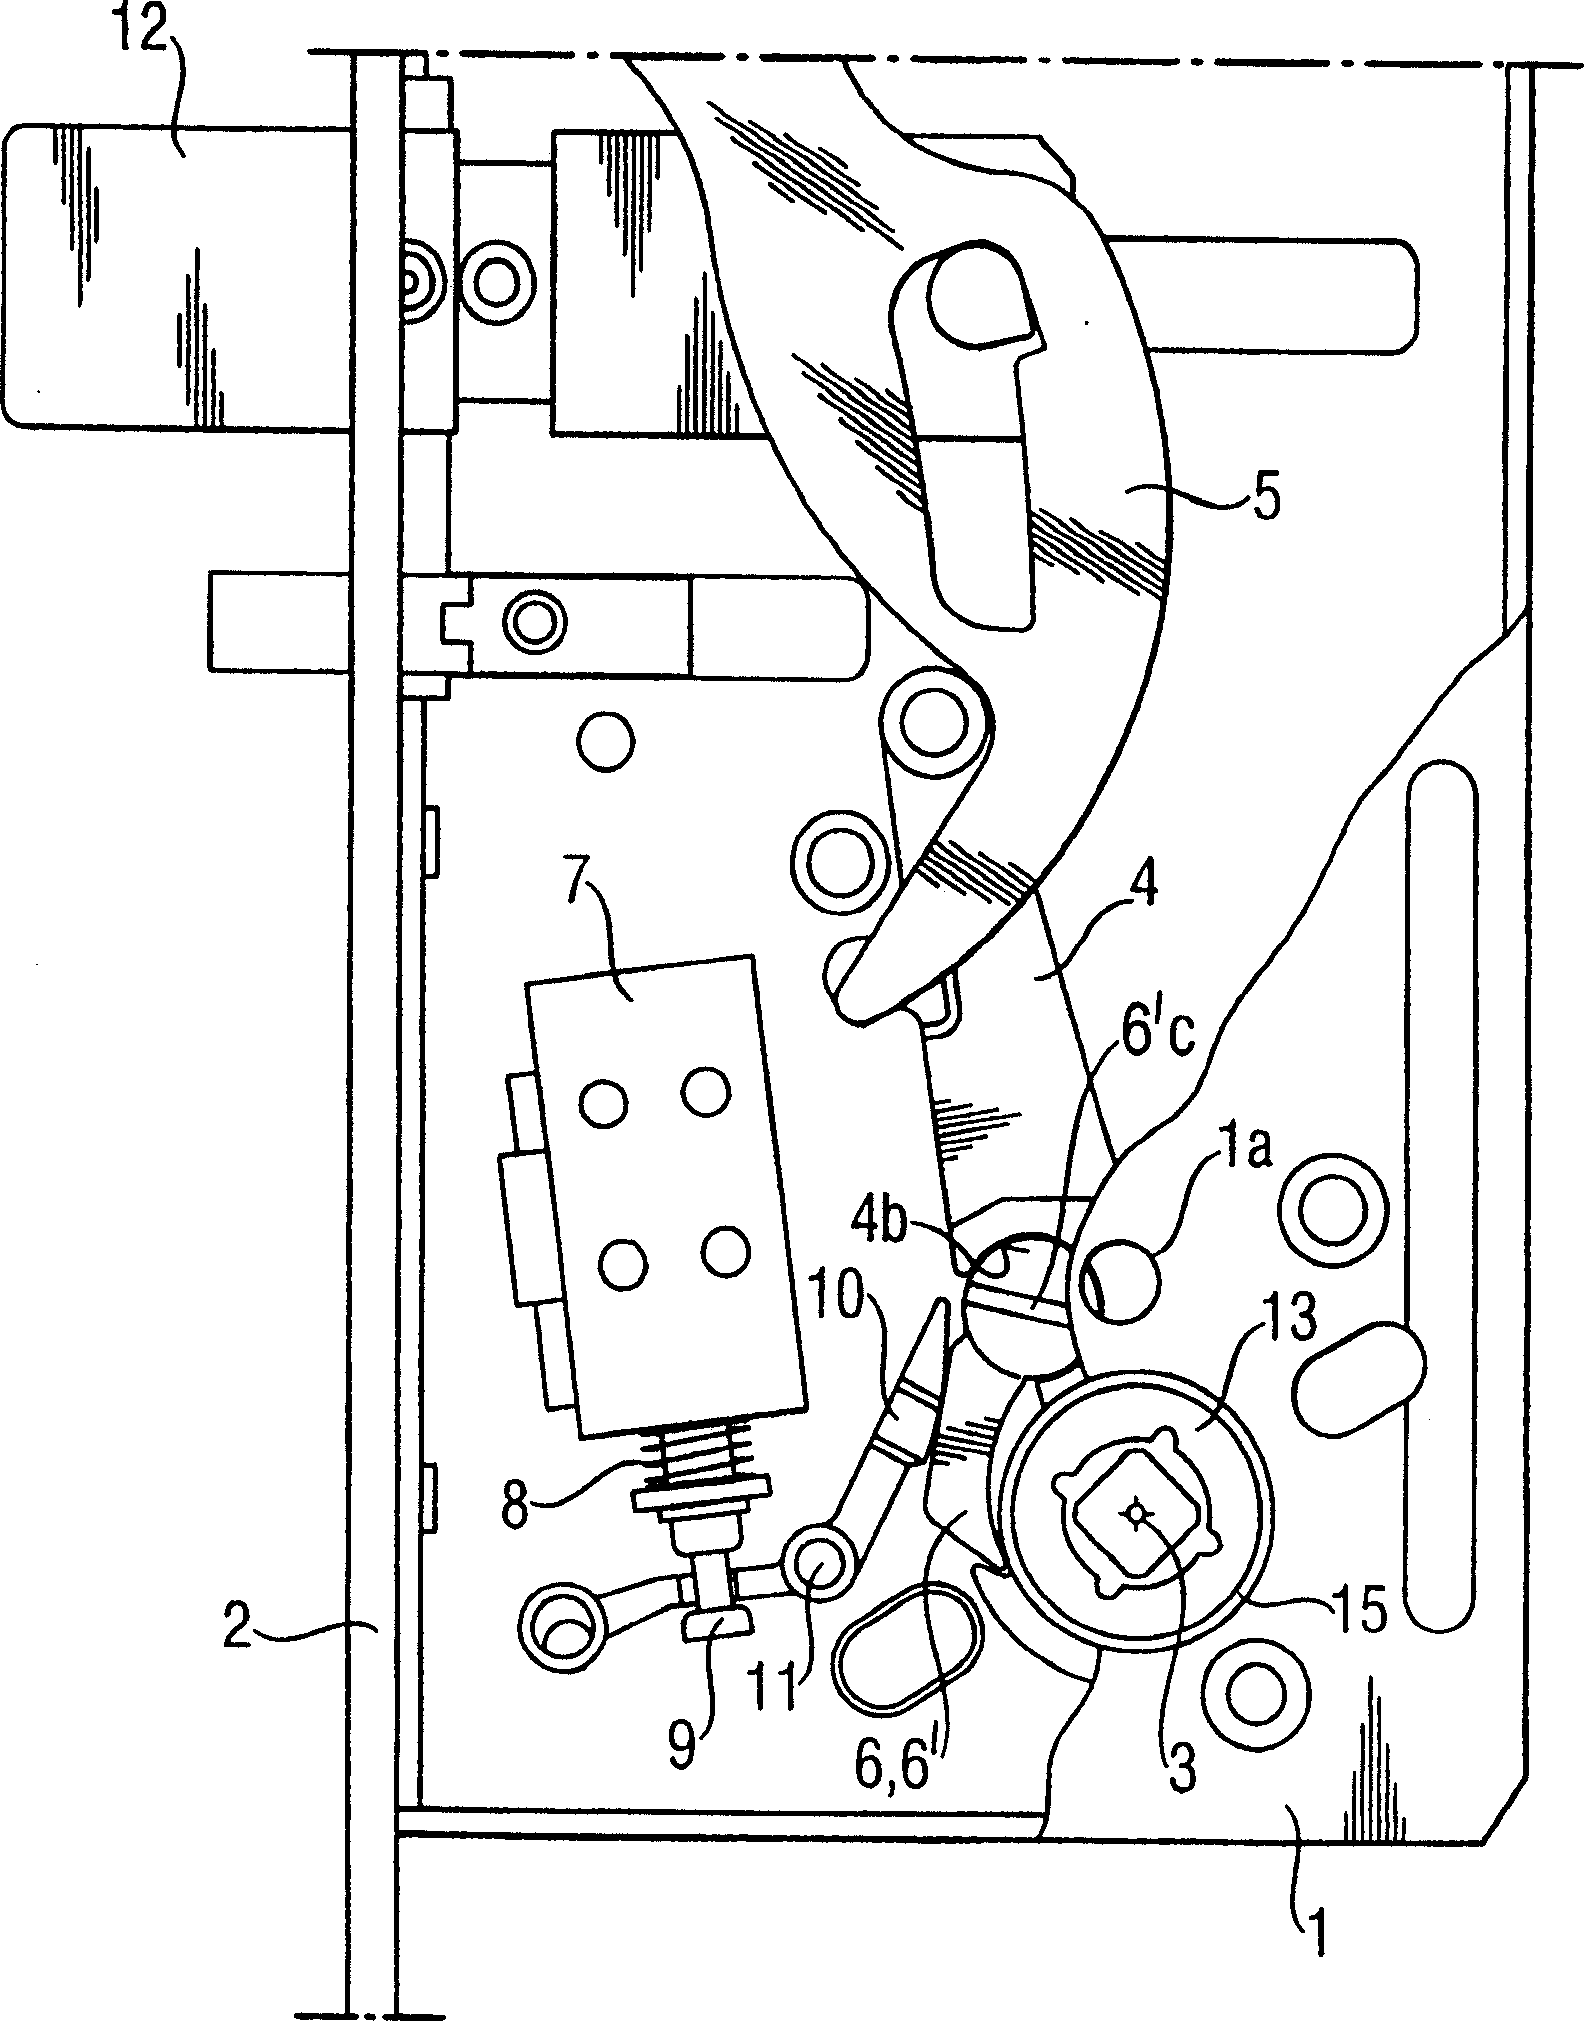 Installation arrangement for controlling handle operation in a door lock and a door lock provided with an installation arrangement of this kind